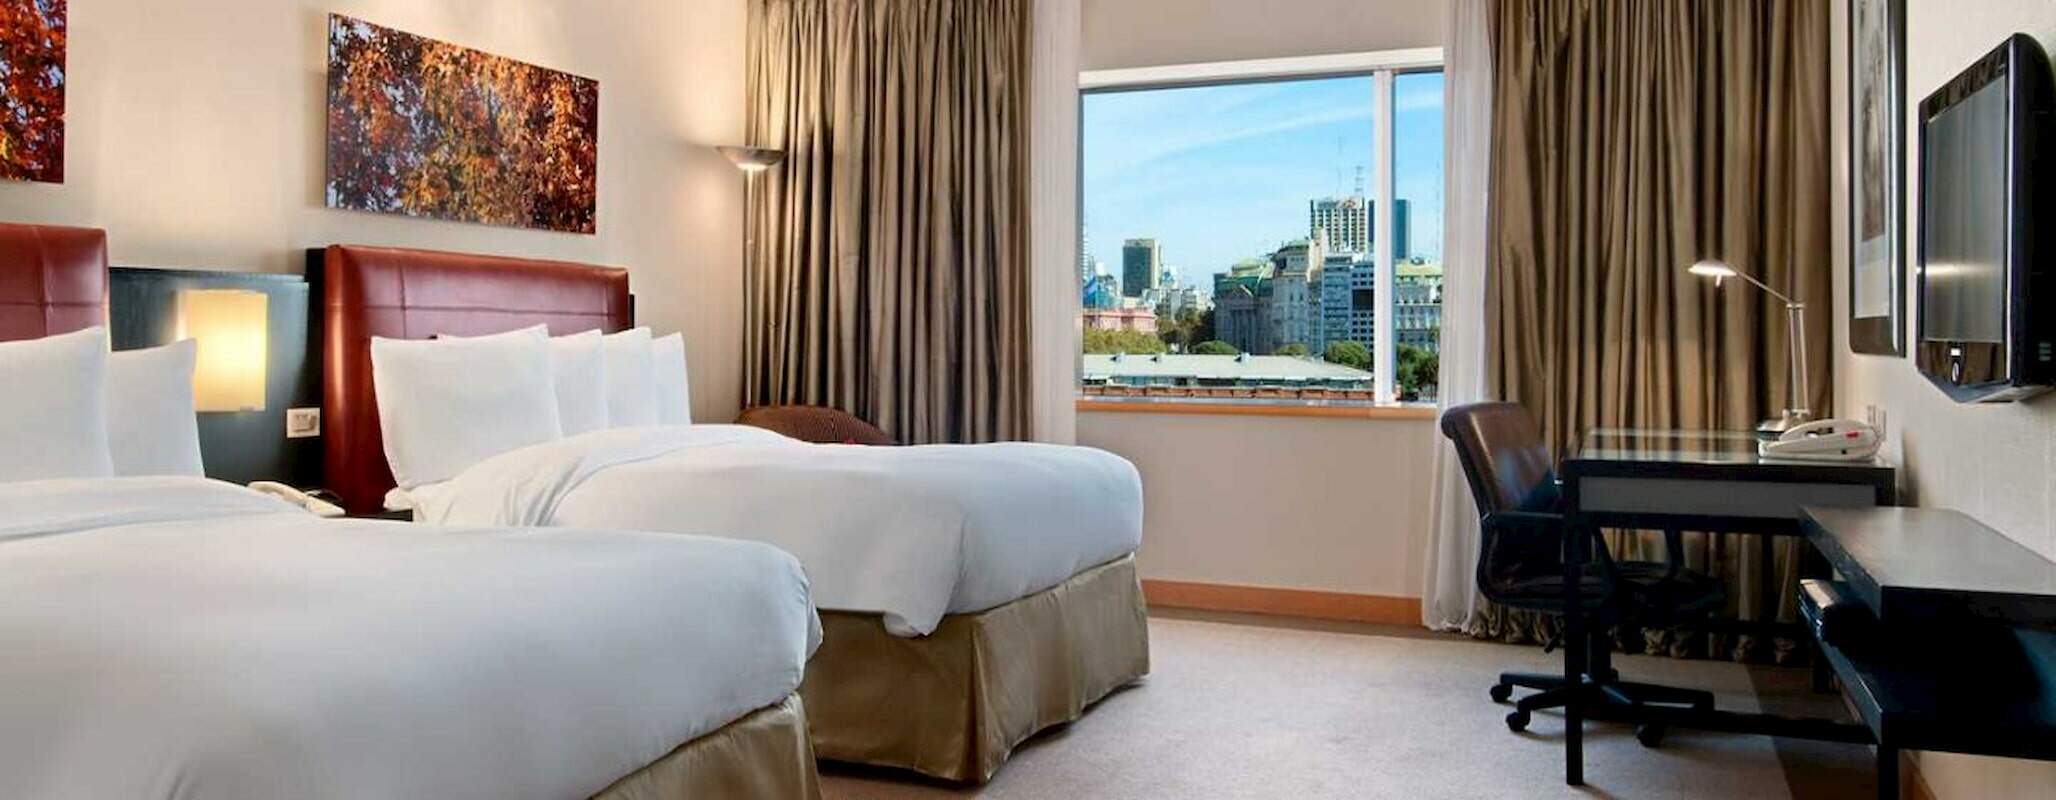 Suite do hotel Hilton, em Puerto Madero, Buenos Aires